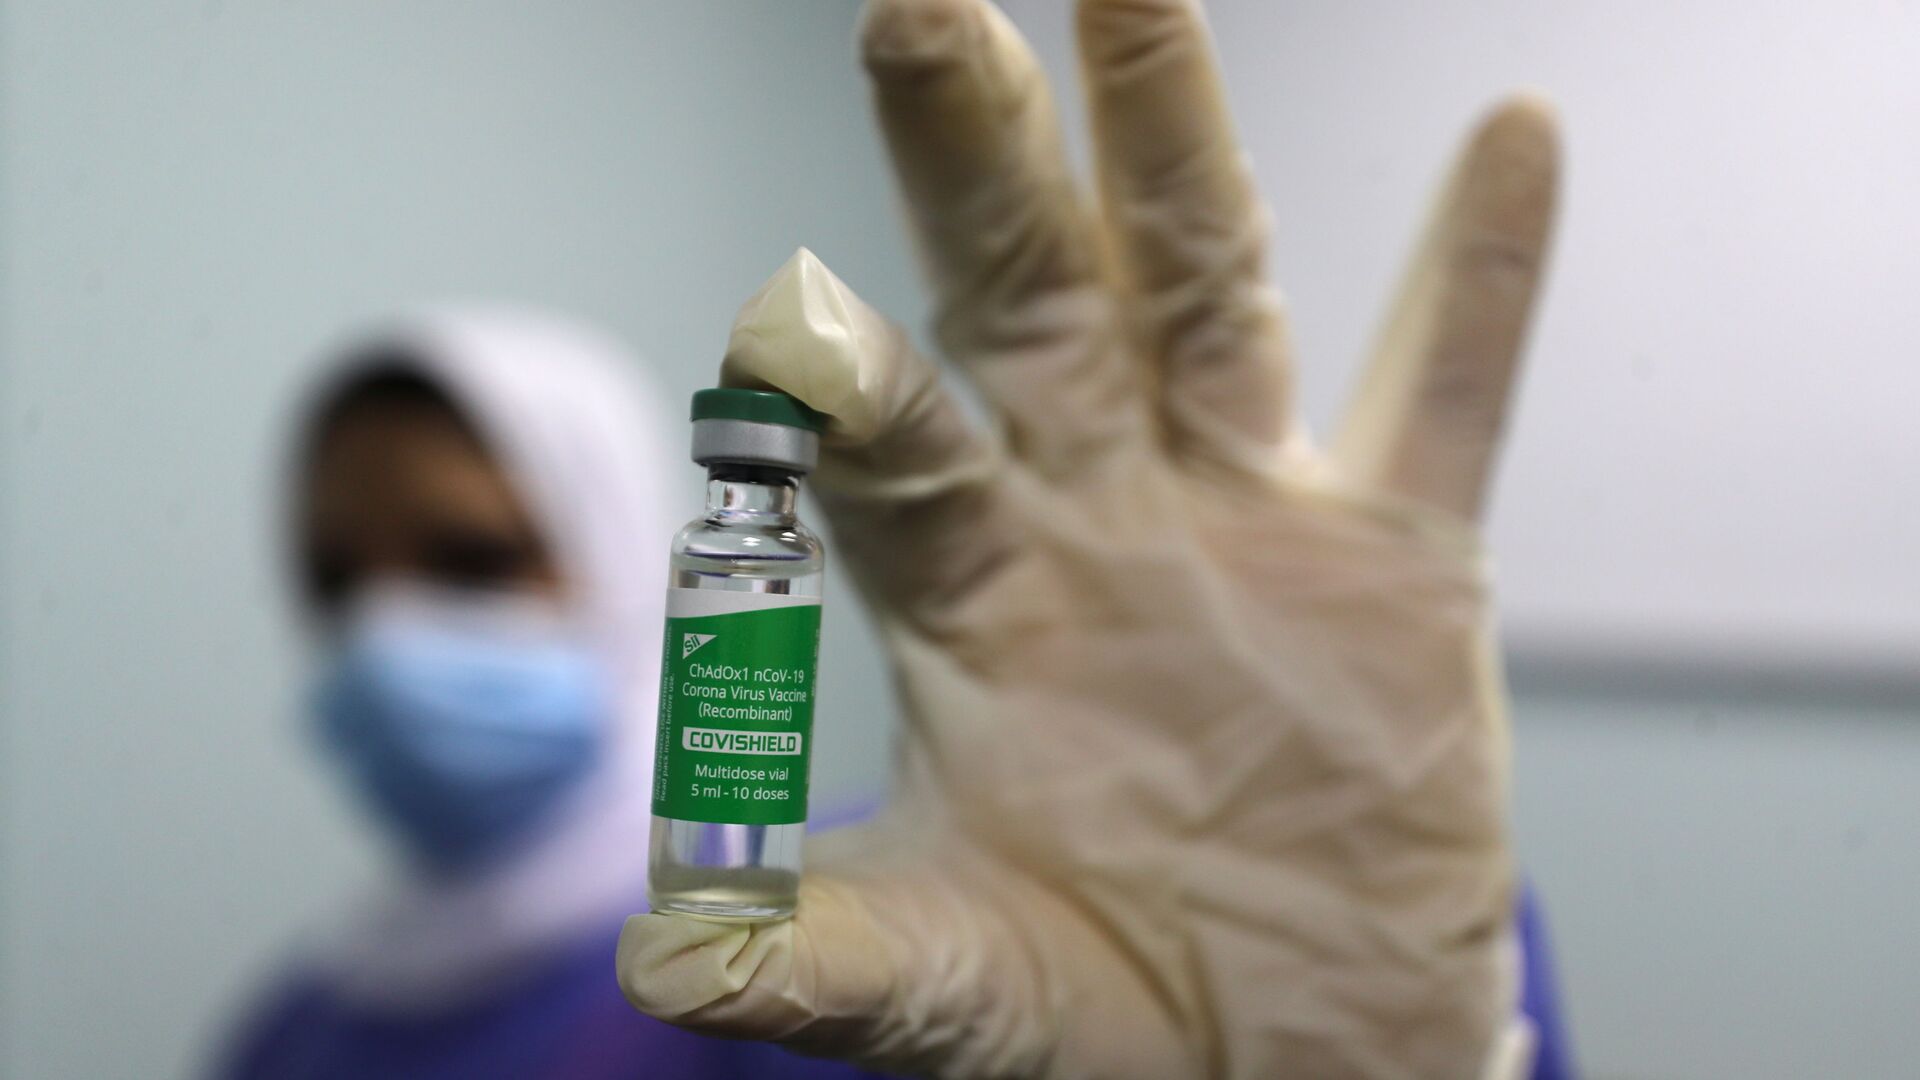 بدء تطعيم واسع النطاق في مصر ضد فيروس كورونا (كوفيد-19)، القاهرة، 4 مارس 2021 - سبوتنيك عربي, 1920, 24.08.2021